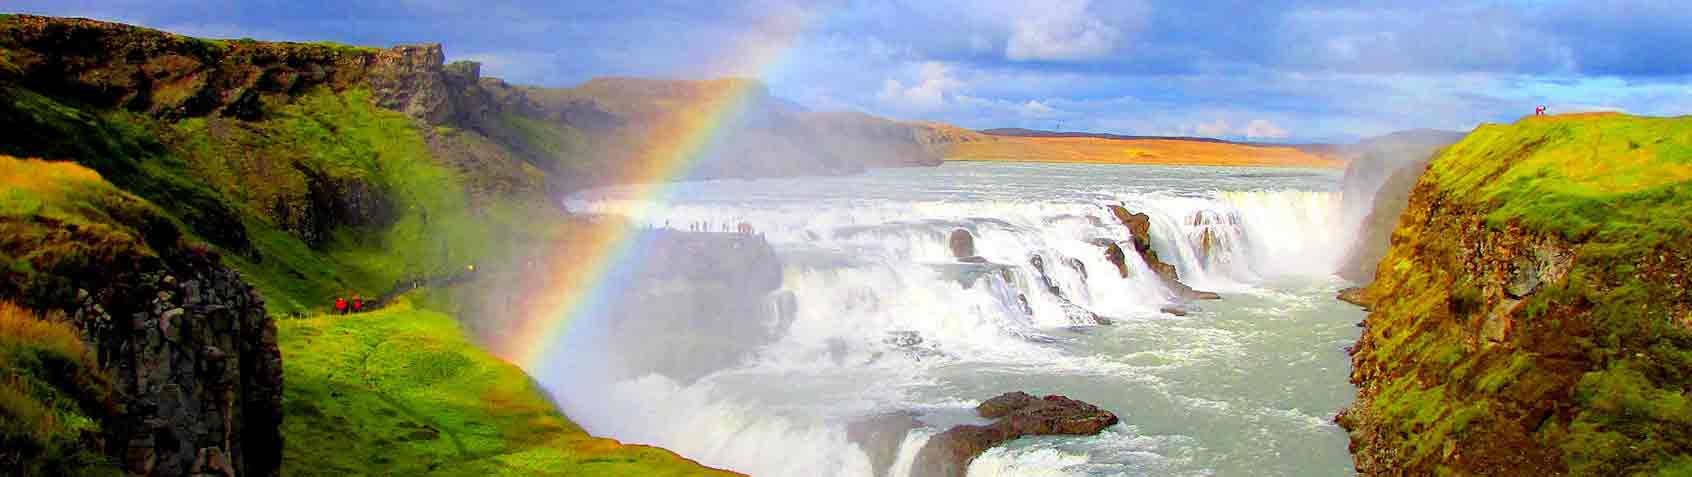 L'islande et ses merveilles